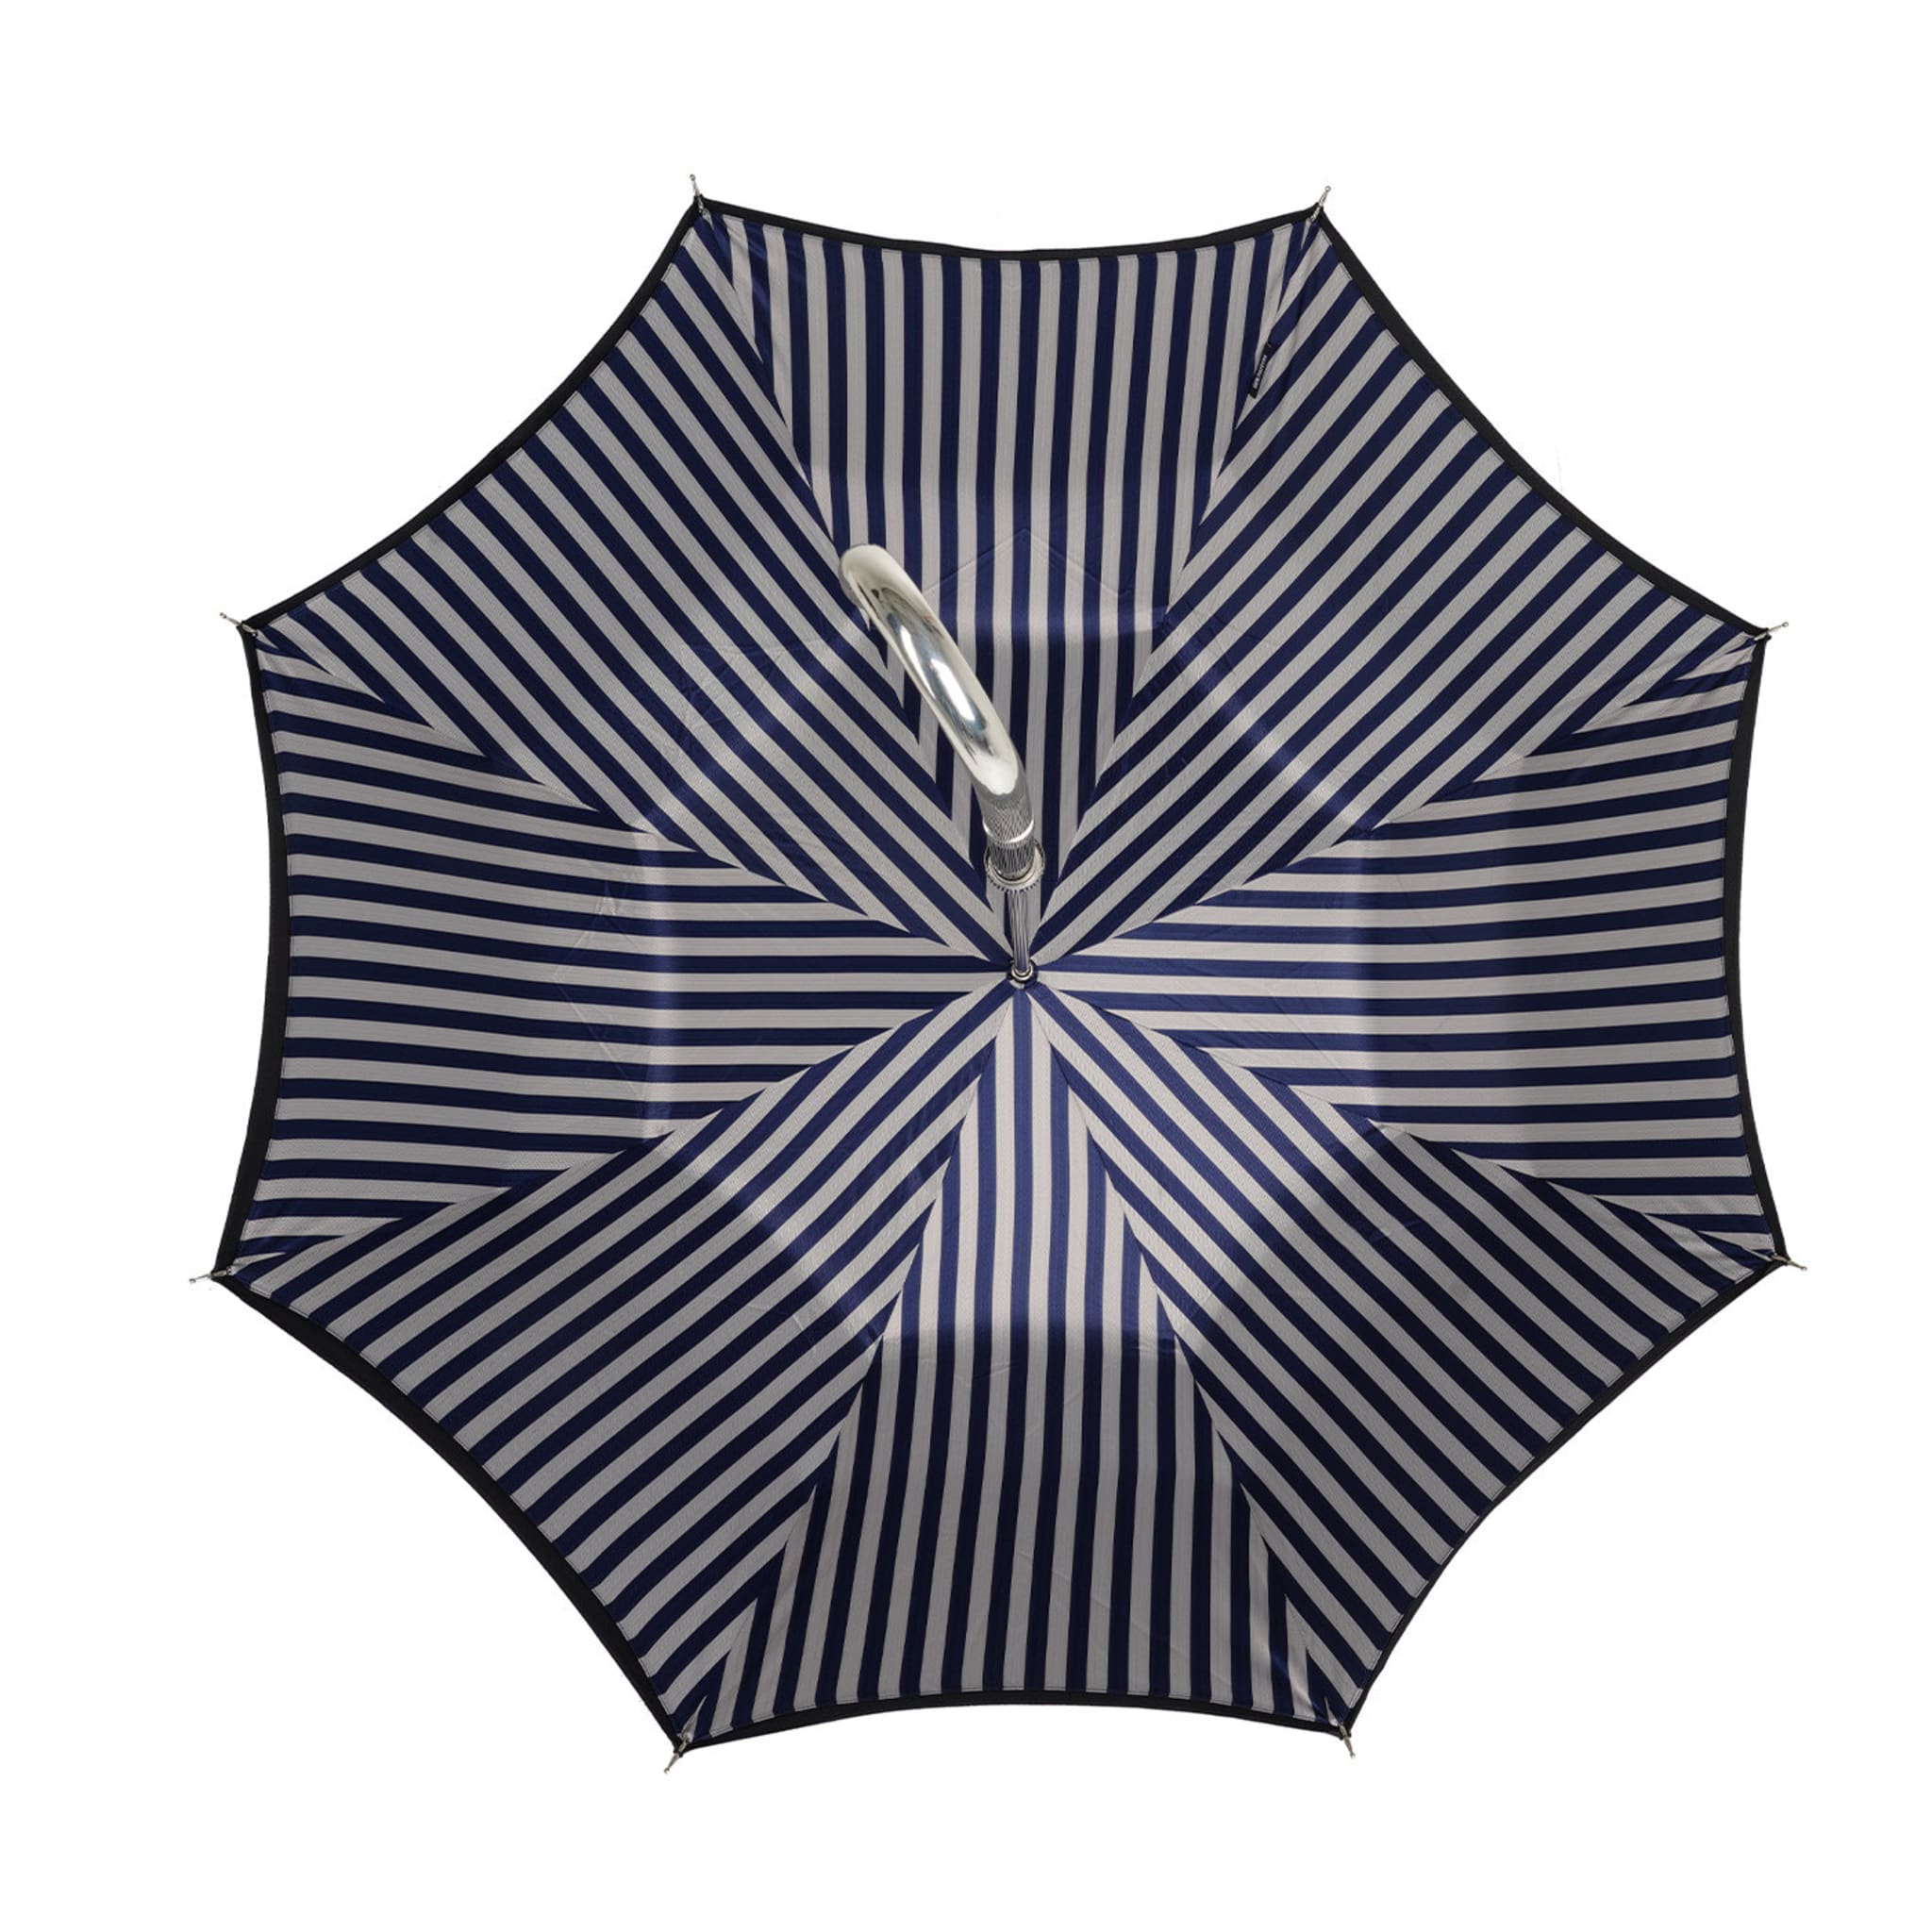 Black/Silver and Blue Striped Umbrella - Alternative view 2